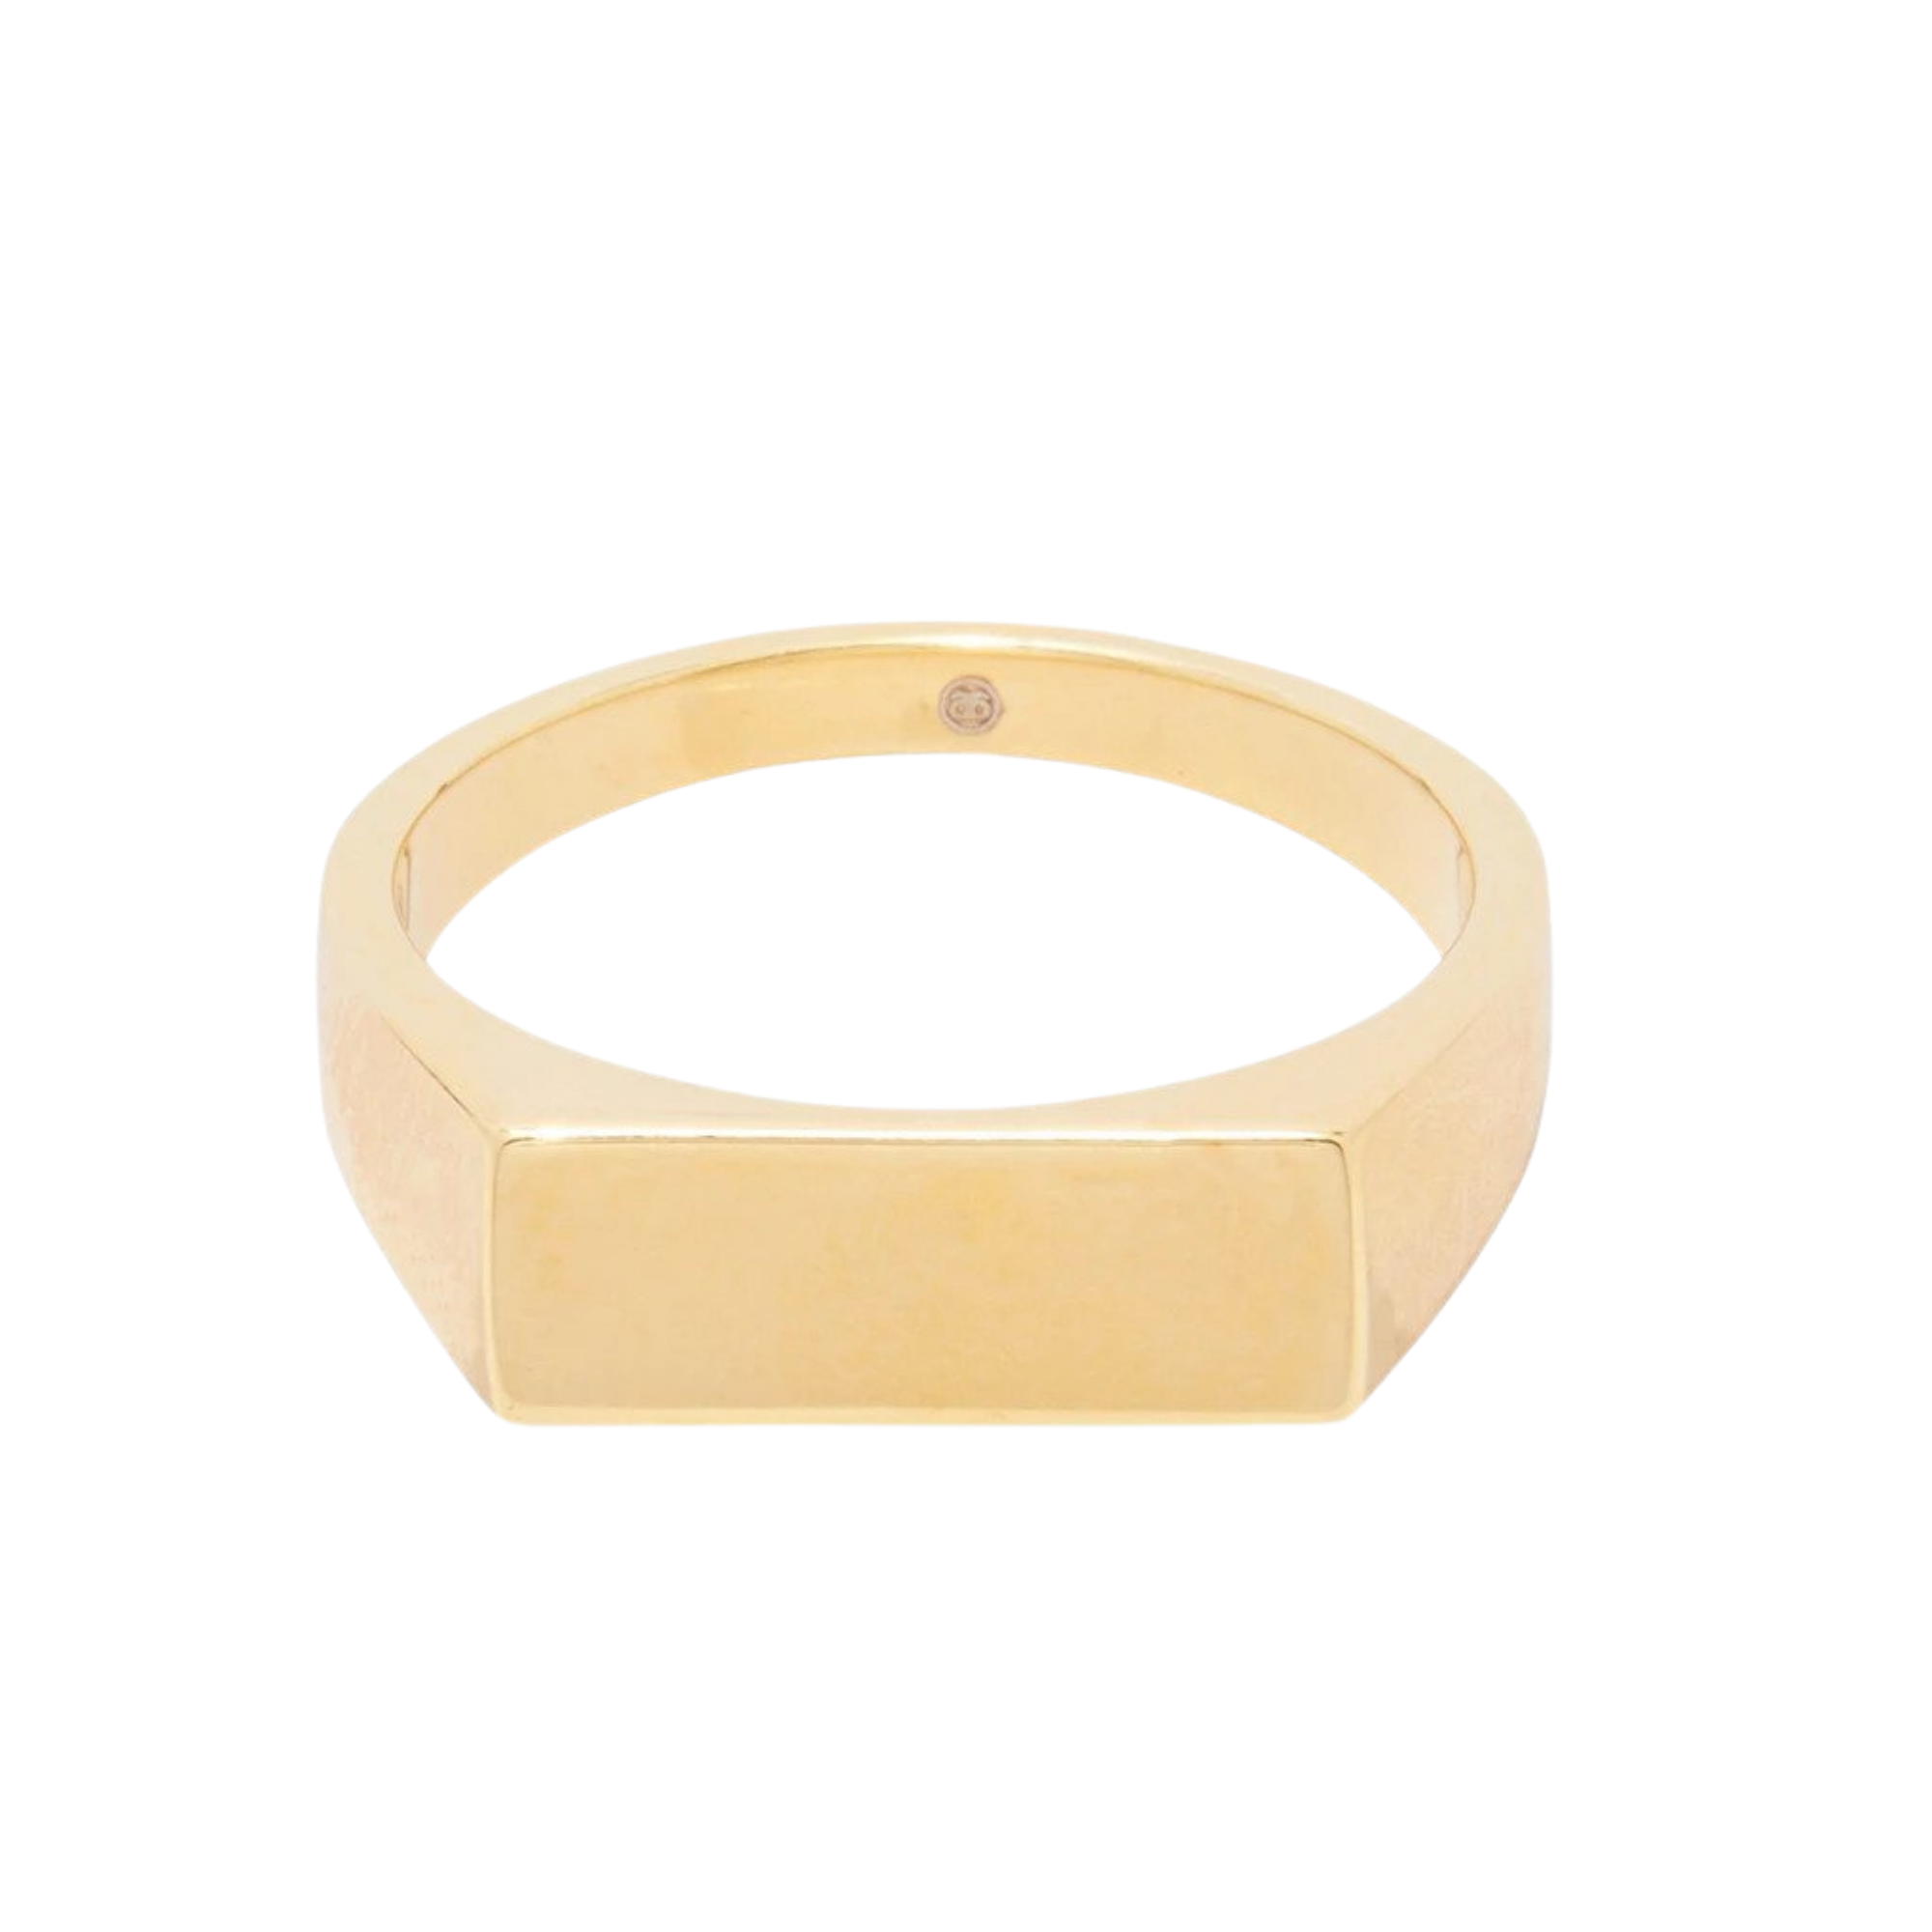 Gorjana Bespoke Wilder Bar Ring (engraveable), $60